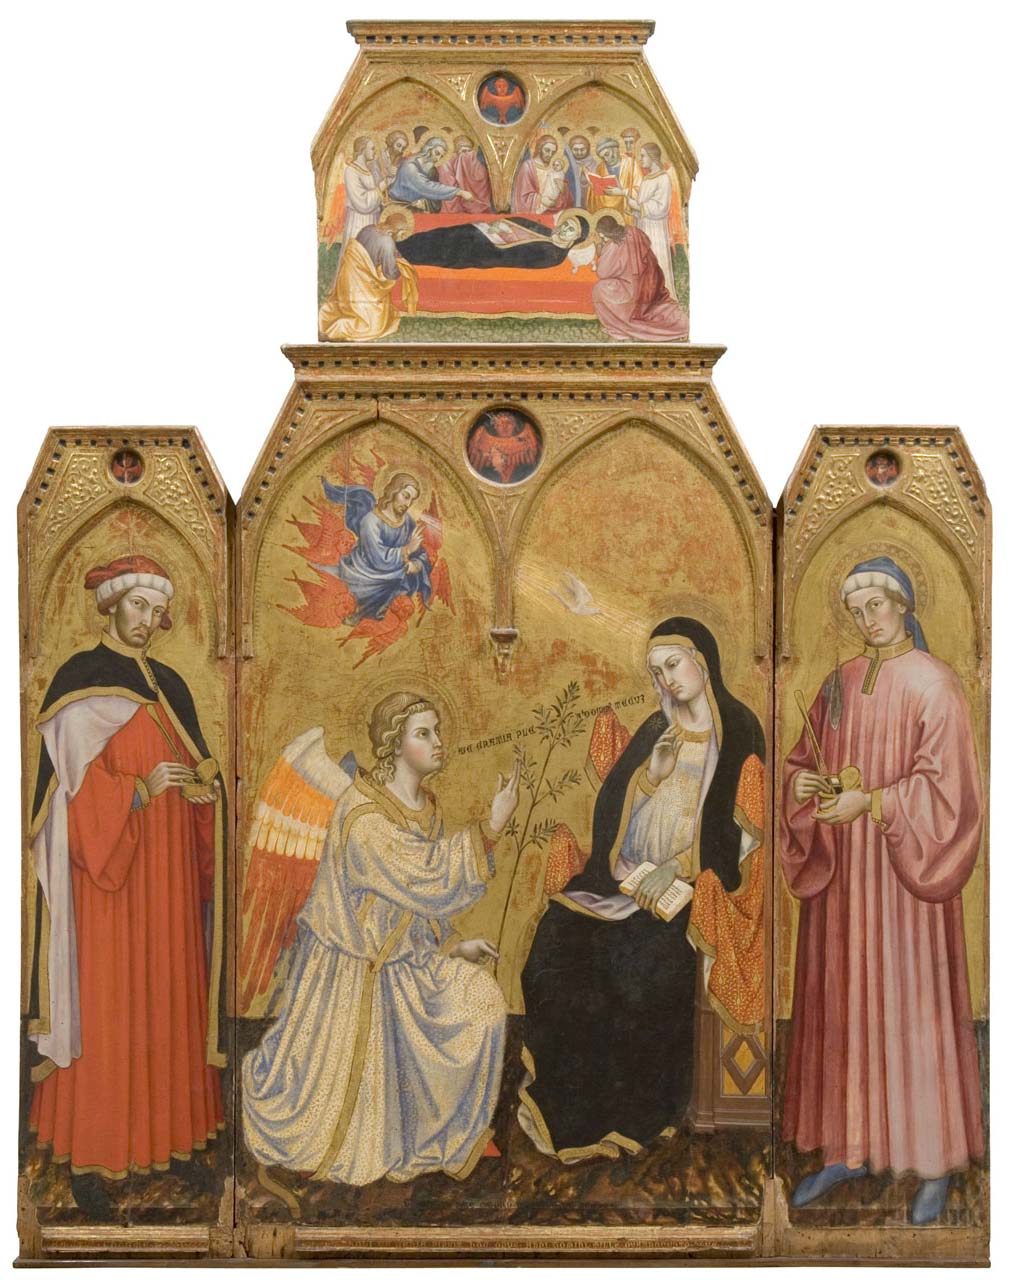 Taddeo di Bartolo, Annunciation (1409; tempera on panel; Siena, Pinacoteca Nazionale)